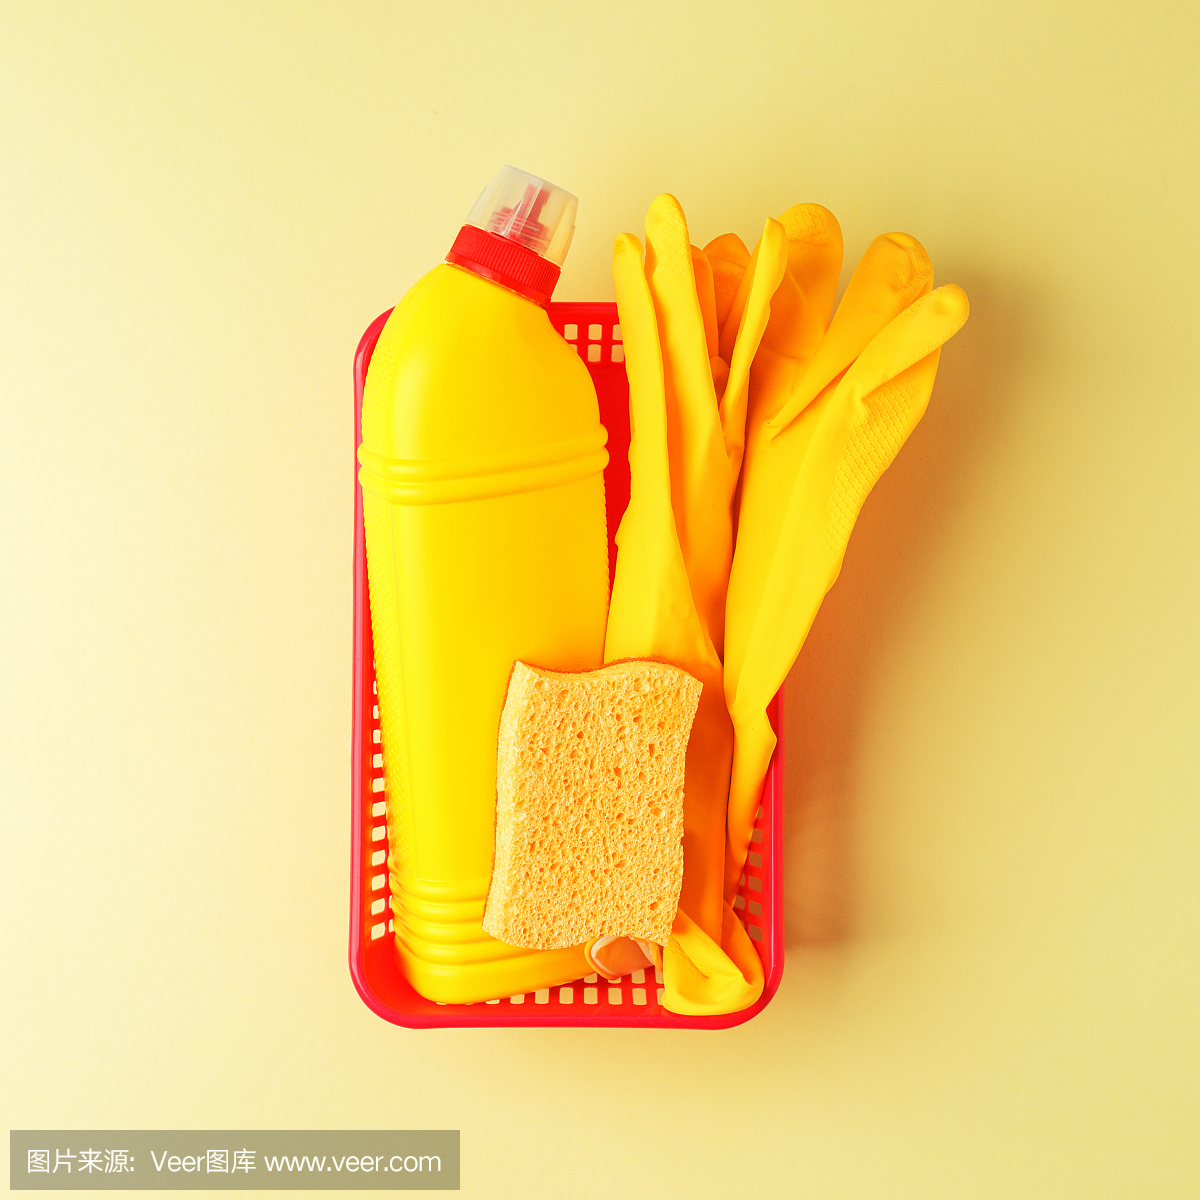 现代集专业清洗服务隔离黄色台面背景。组黄卫生保洁概念。橡胶手套,瓶子和海绵清洁剂。